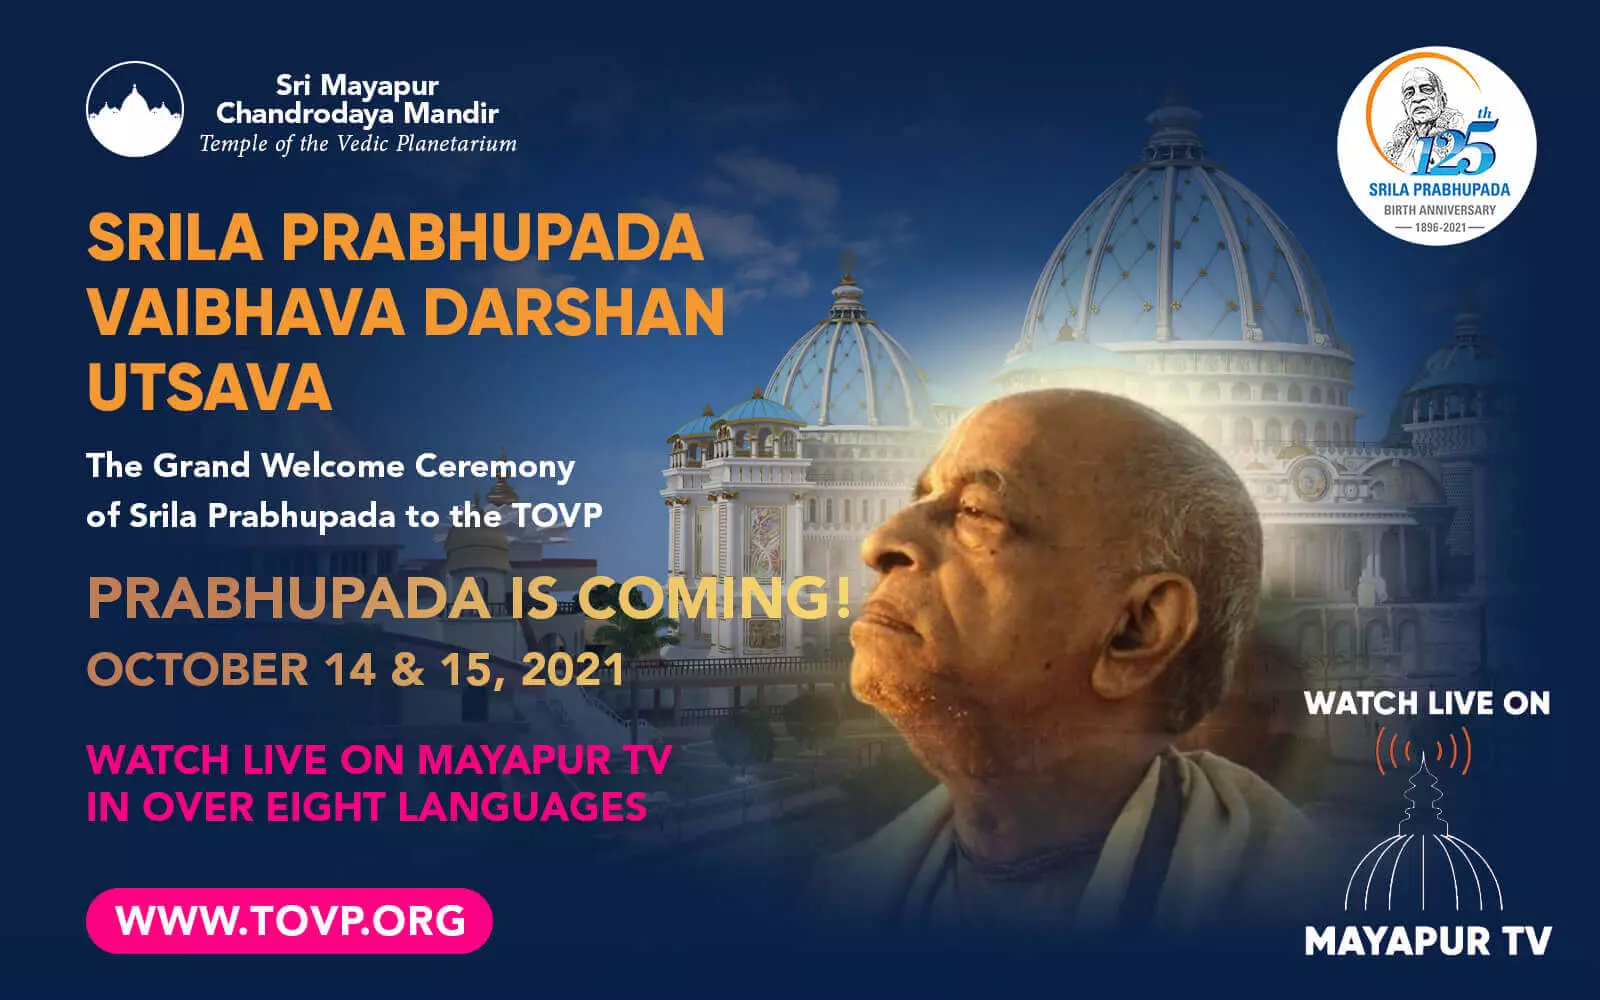 PRABHUPADA ARRIVE AU TOVP ! Regardez en direct sur Mayapur TV, les 14 et 15 octobre